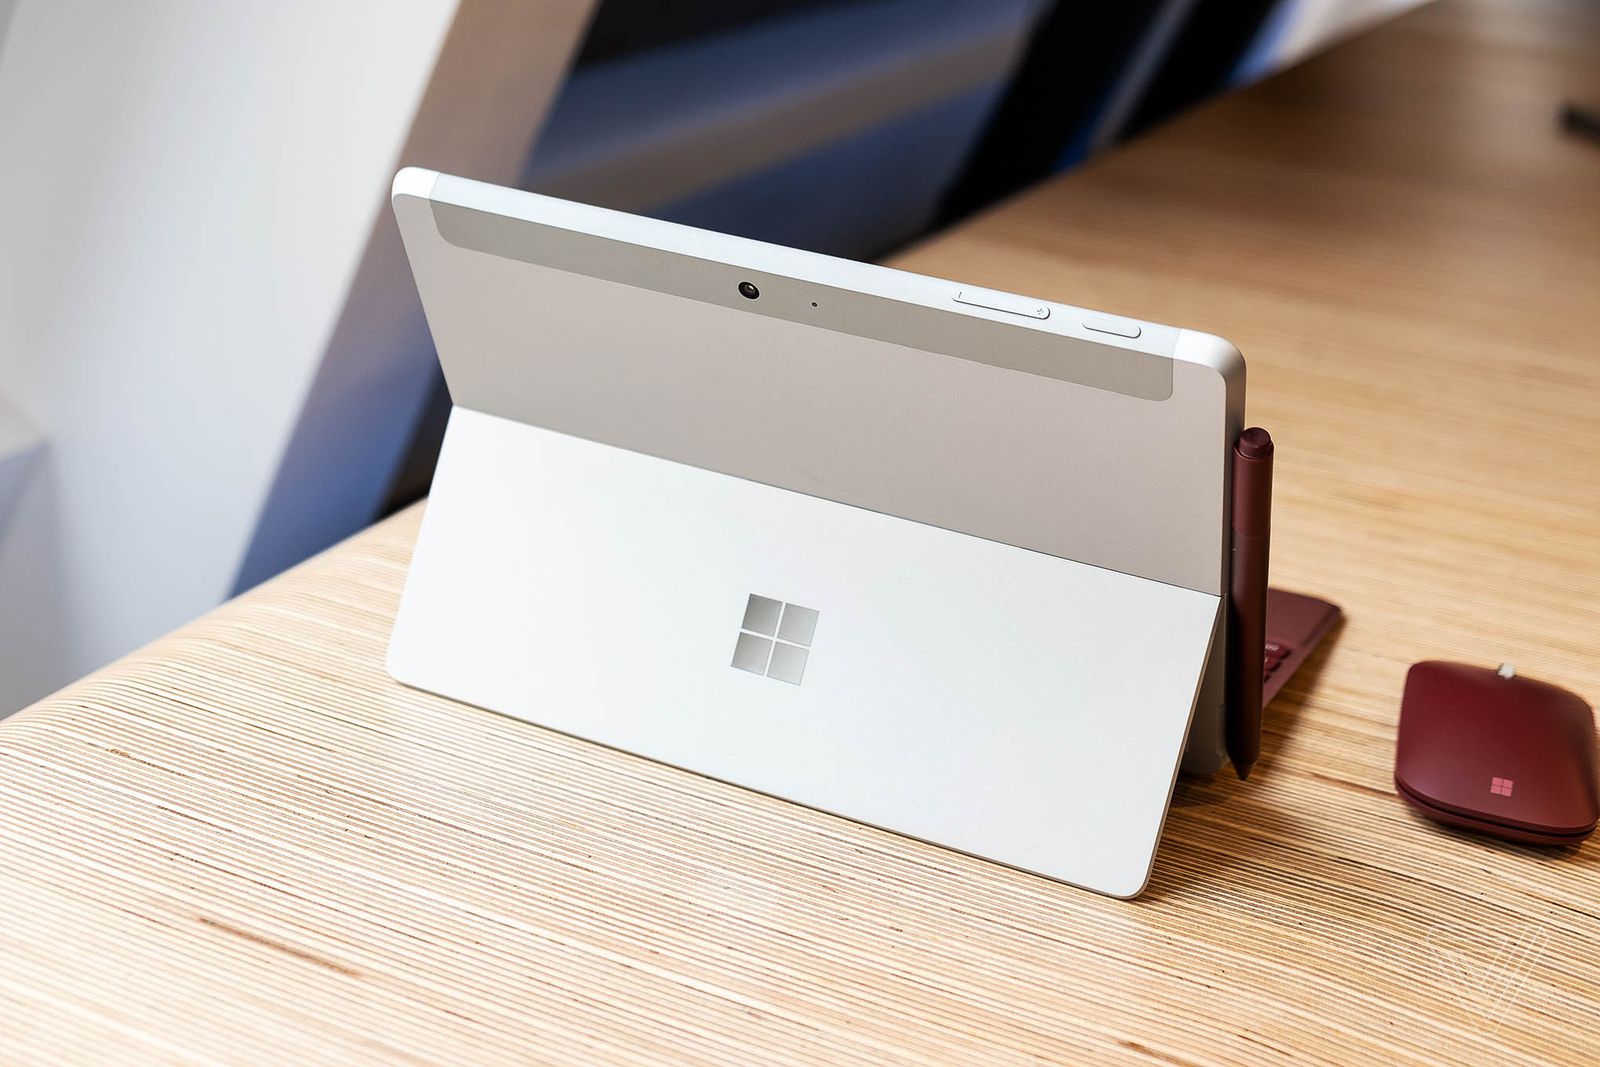 Microsoft chính thức ra mắt Surface Go giá rẻ cạnh
tranh trực tiếp với Apple iPad